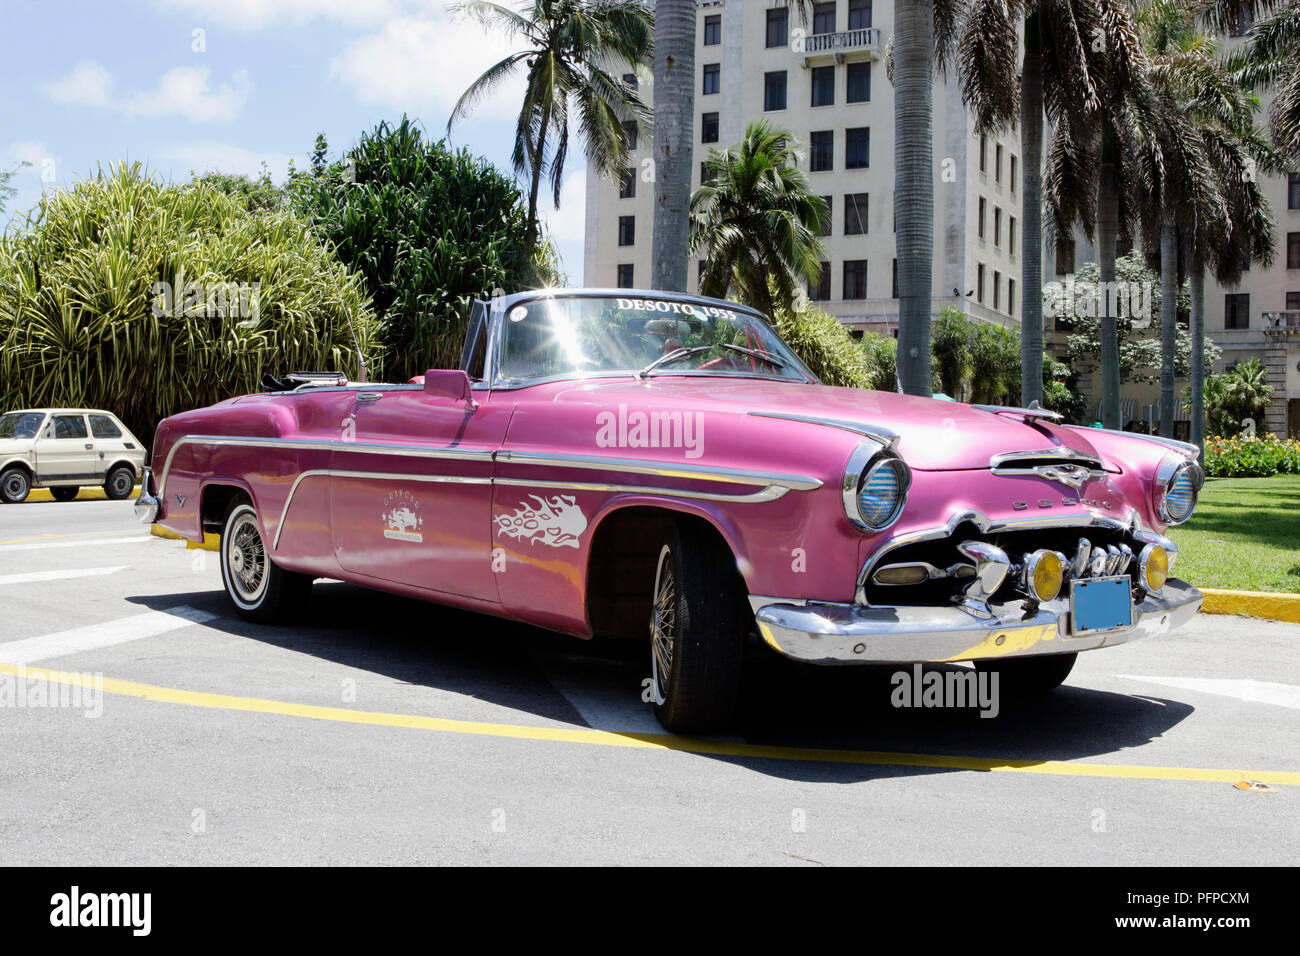 Cuba, La Havane, 1950 voiture américaine classique utilisé comme Grancar taxi stationné à l'extérieur de l'hôtel Gran Caribe Nacional de Cuba Banque D'Images